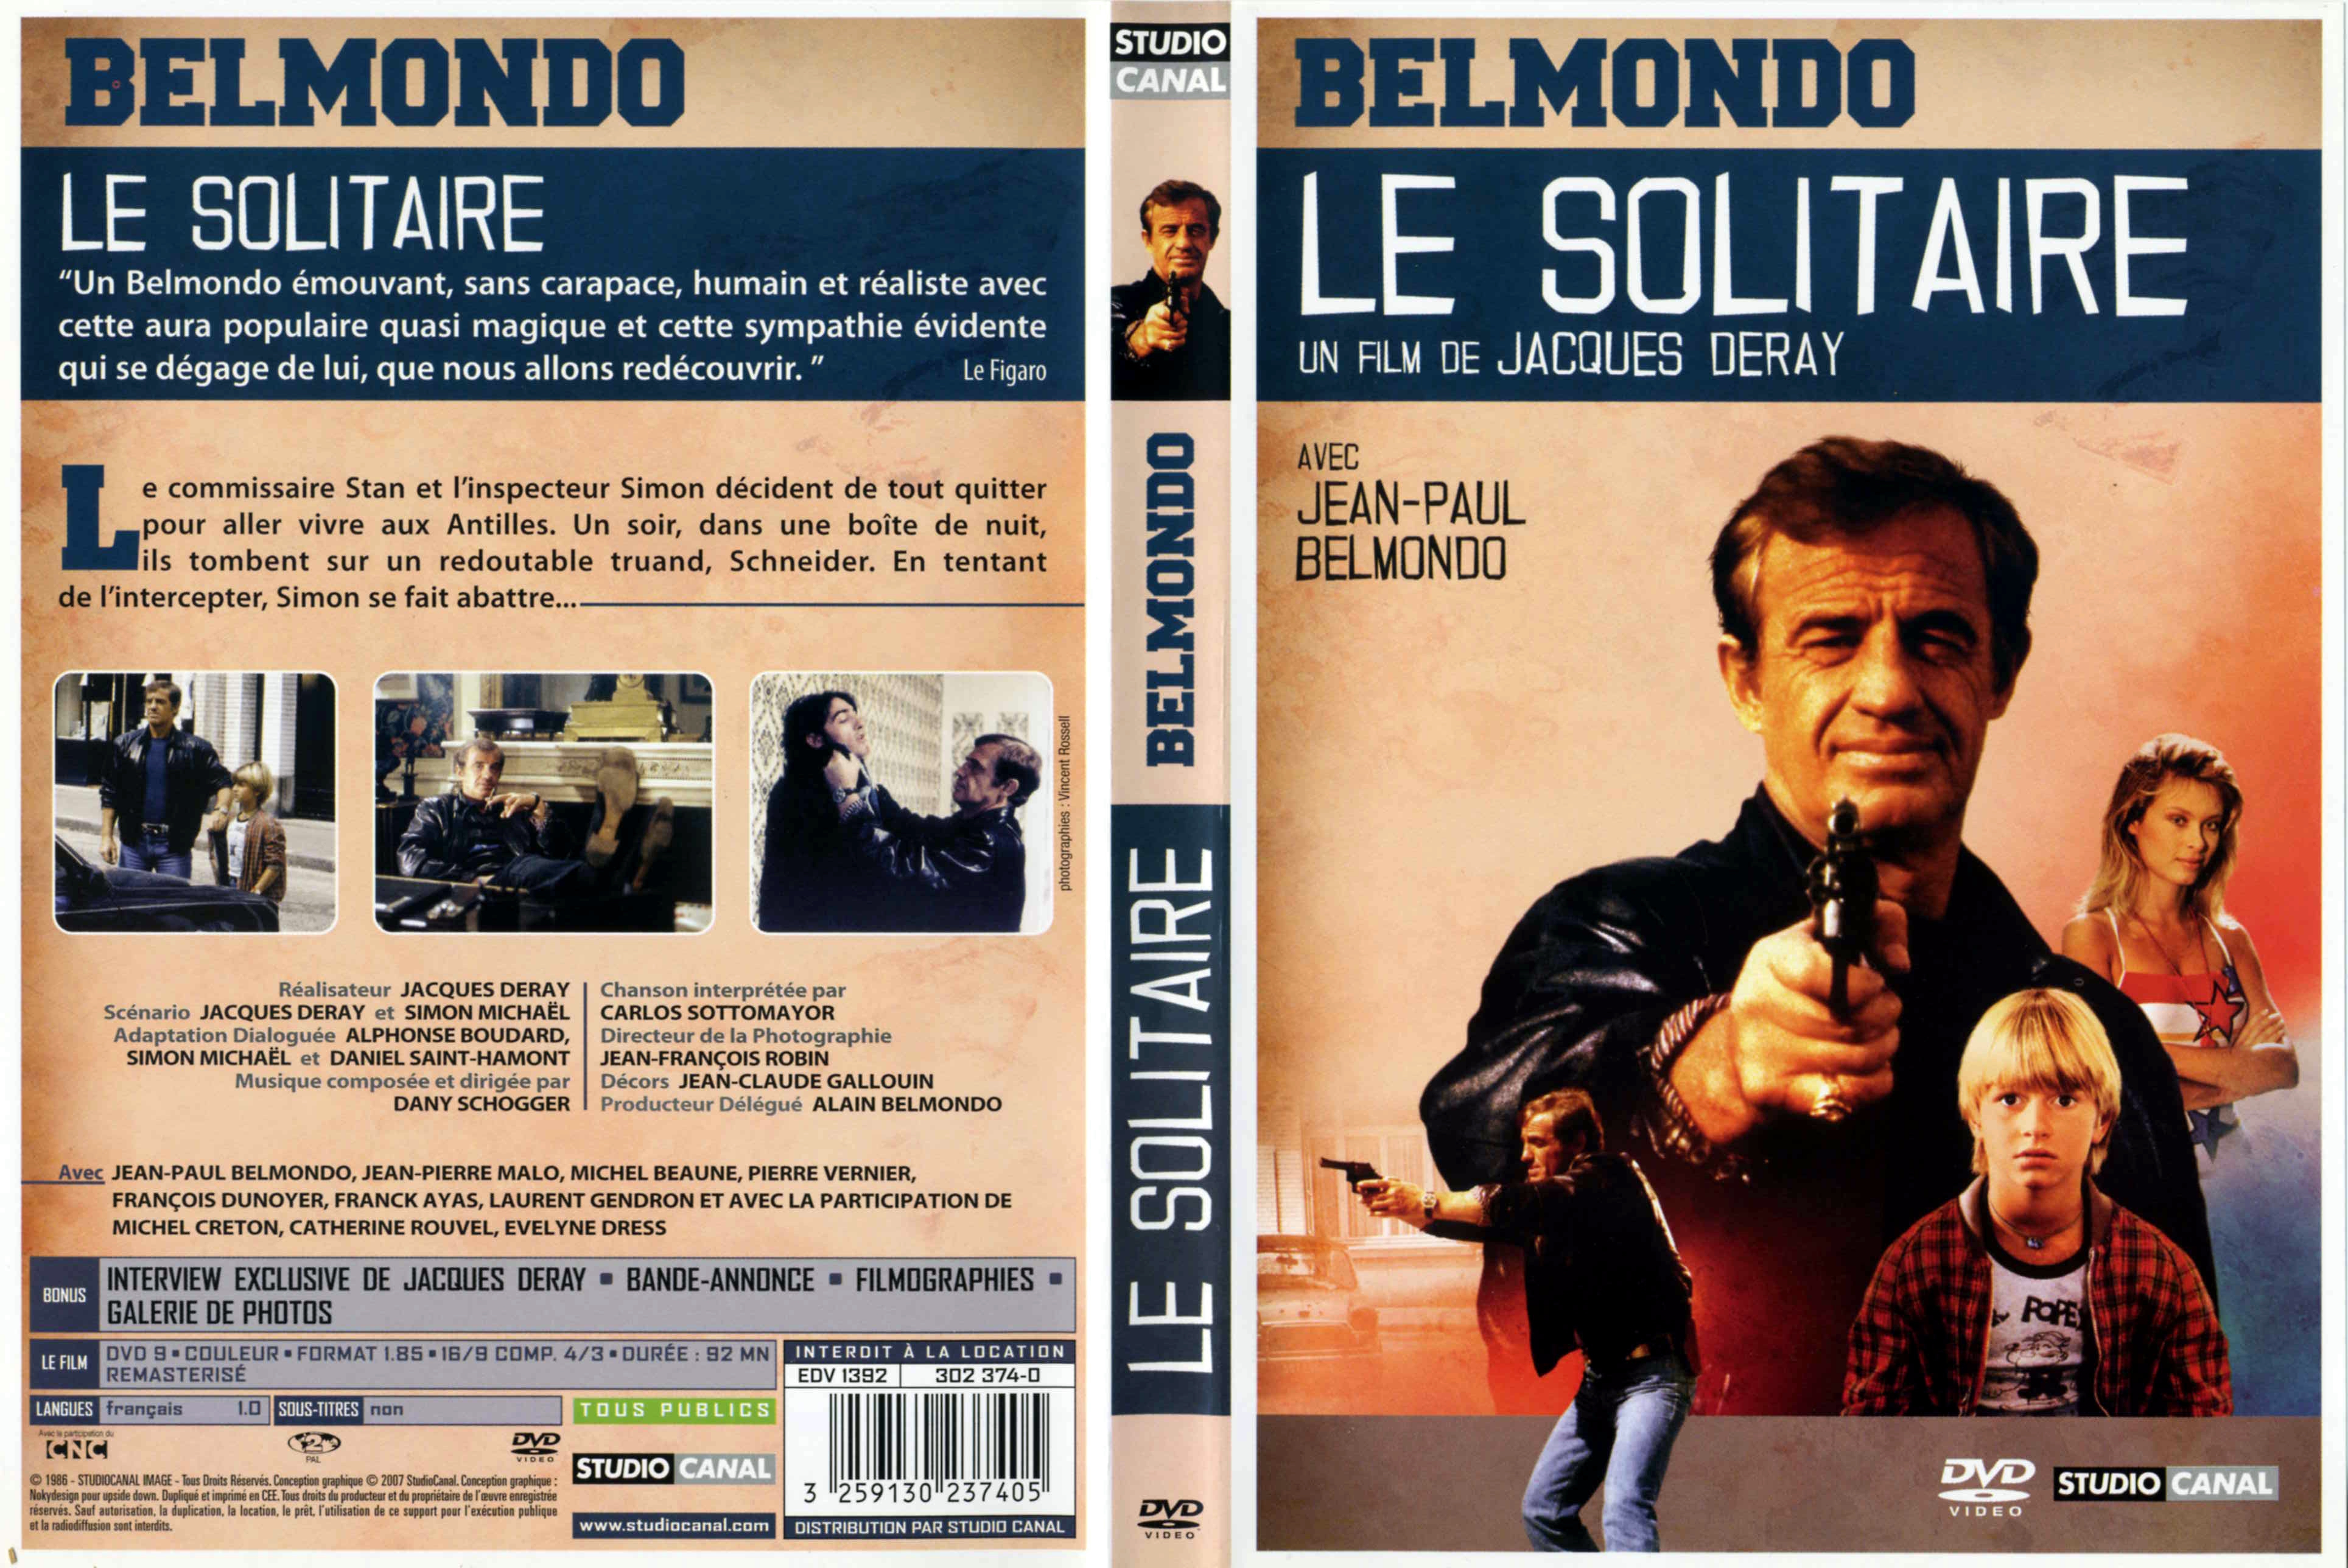 Jaquette DVD Le solitaire (Belmondo) v3